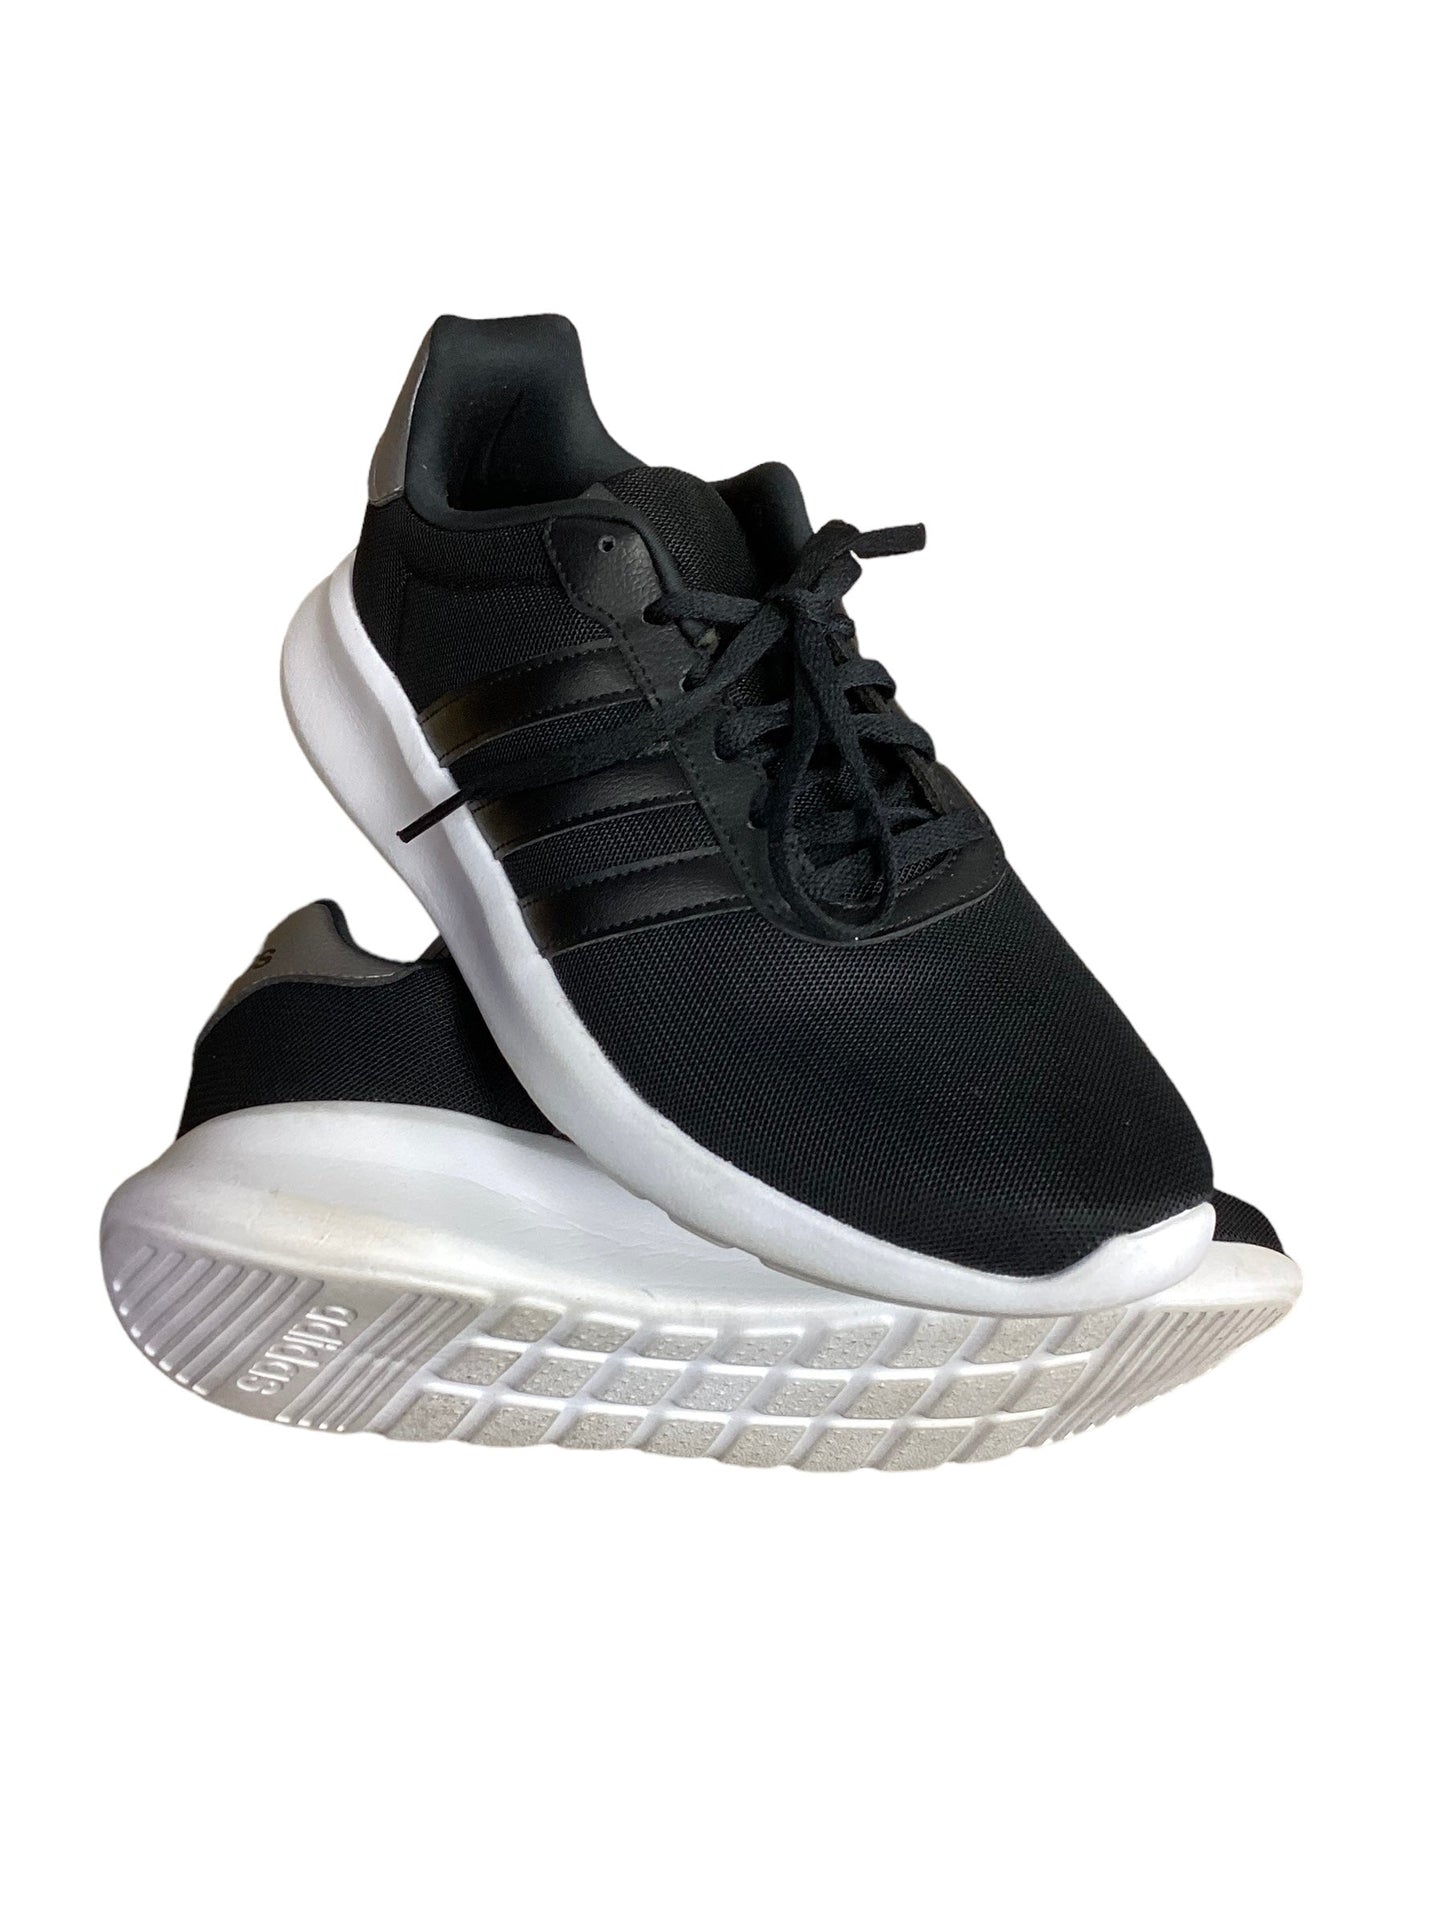 Black Shoes Athletic Adidas, Size 10